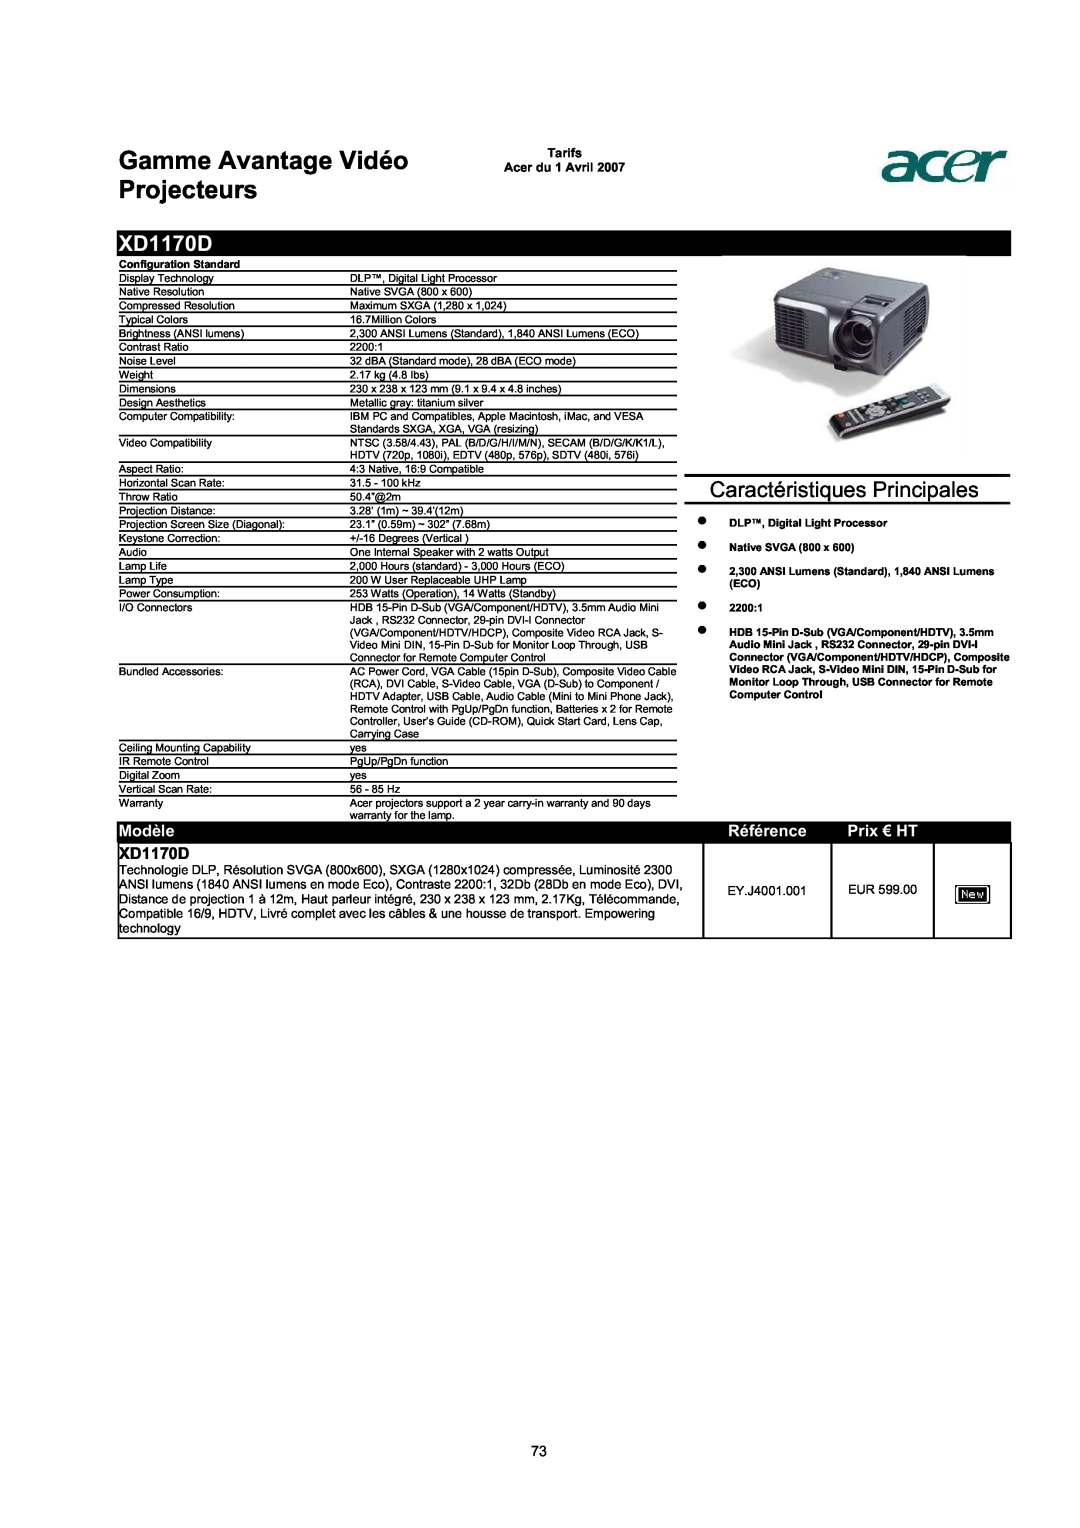 Acer AC713B-17 XD1170D, Gamme Avantage Vidéo Projecteurs, Caractéristiques Principales, Modèle, Référence, Prix € HT 